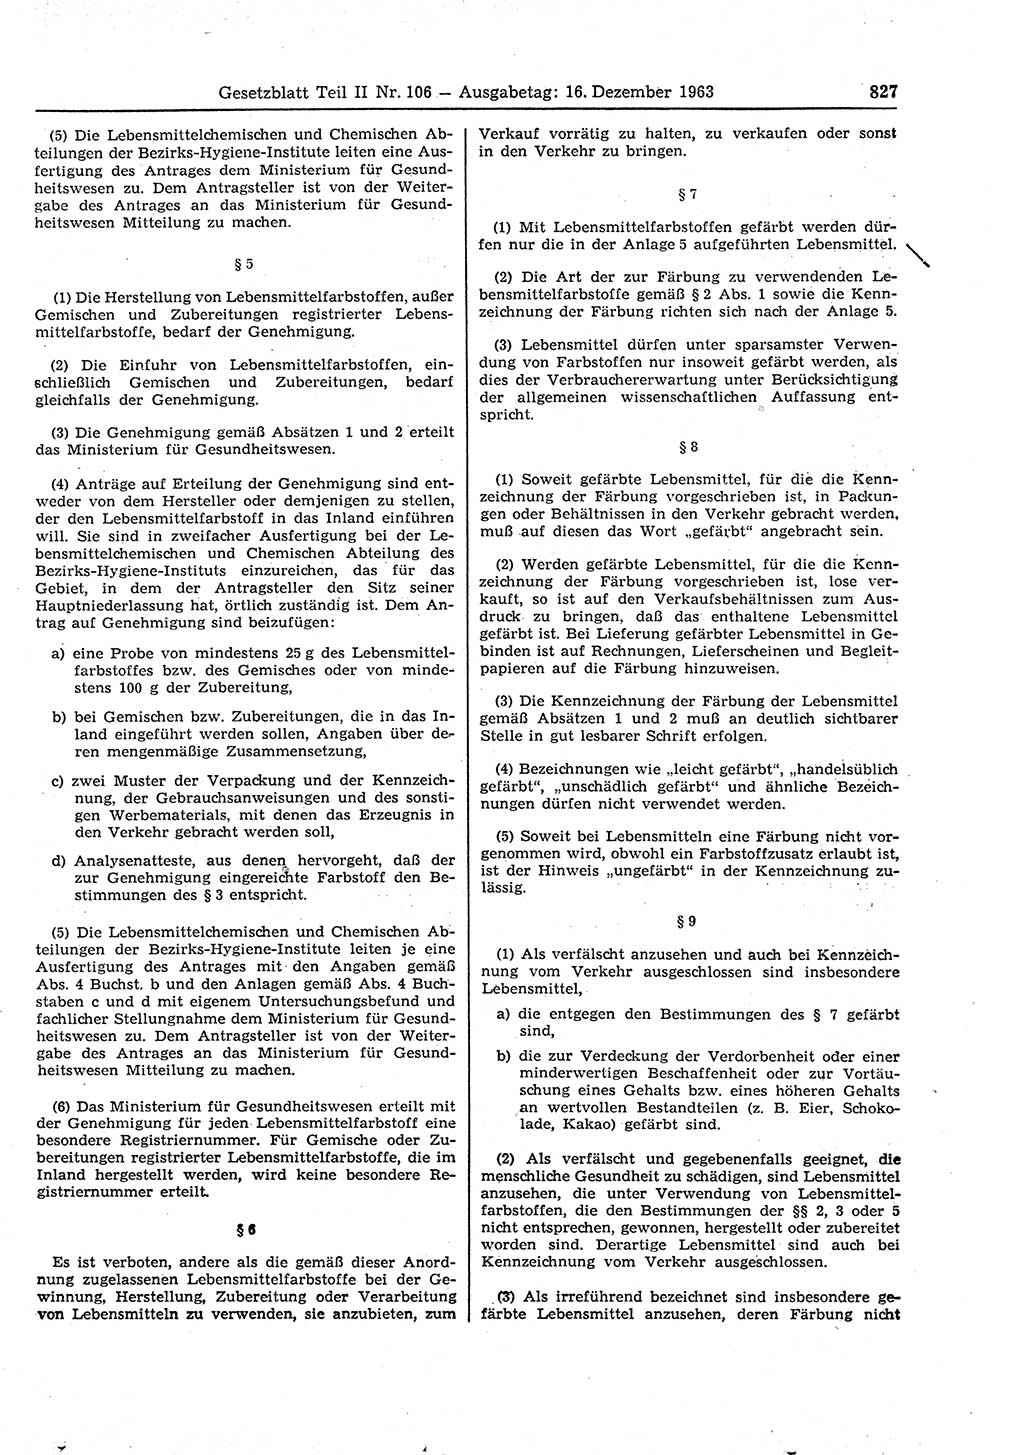 Gesetzblatt (GBl.) der Deutschen Demokratischen Republik (DDR) Teil ⅠⅠ 1963, Seite 827 (GBl. DDR ⅠⅠ 1963, S. 827)